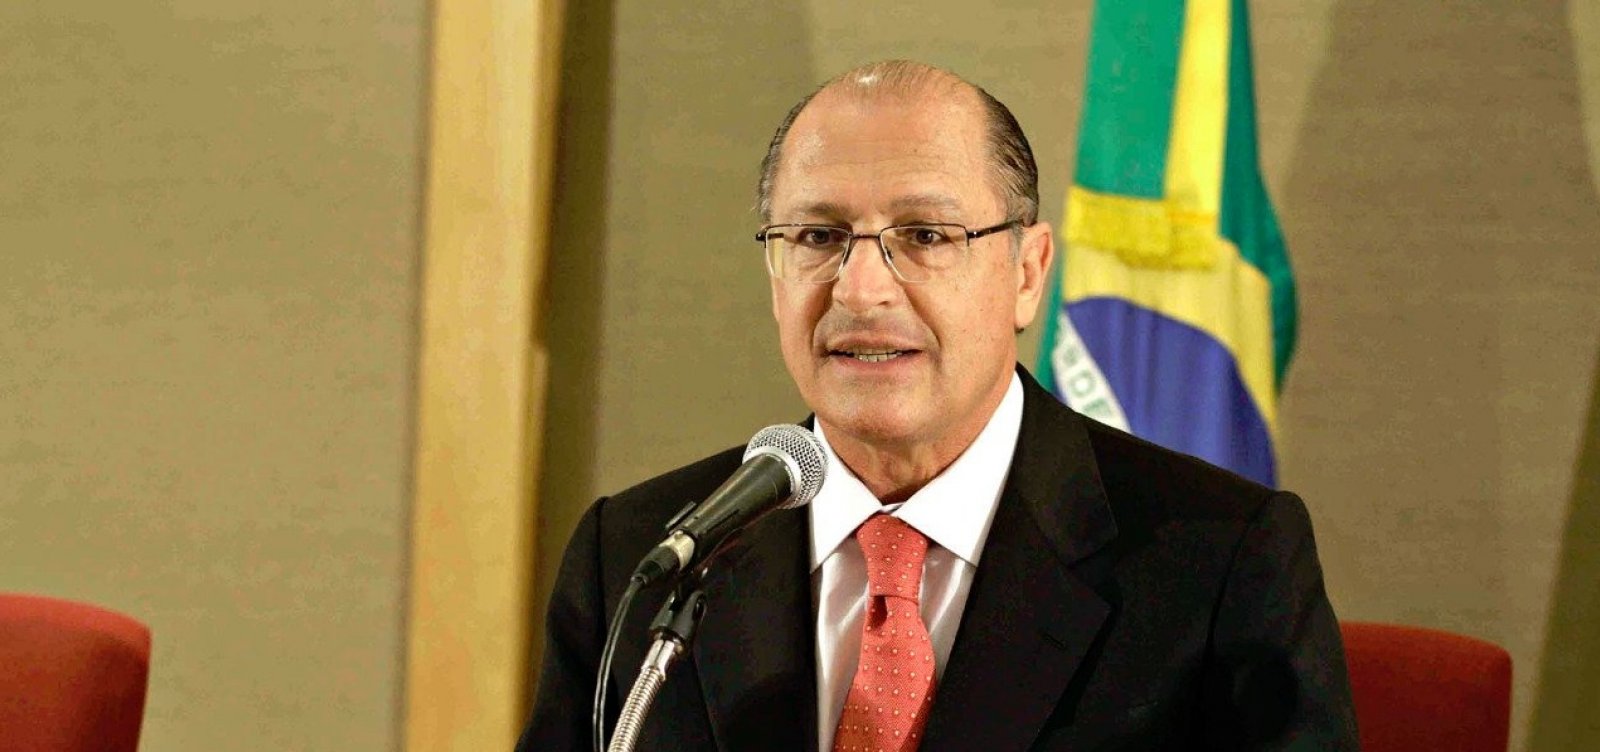 De olho no voto dos baianos, Alckmin diz que tem ‘lado afetivo’ com a Bahia